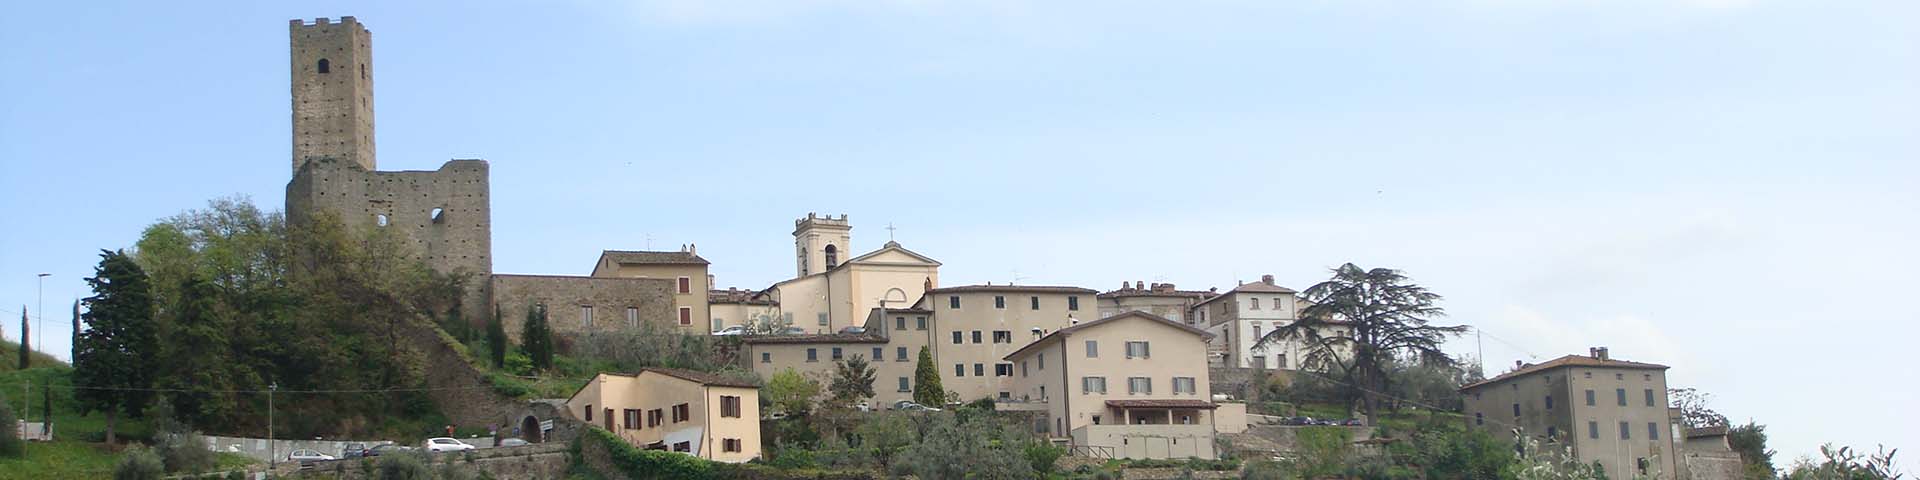 Castello di Larciano